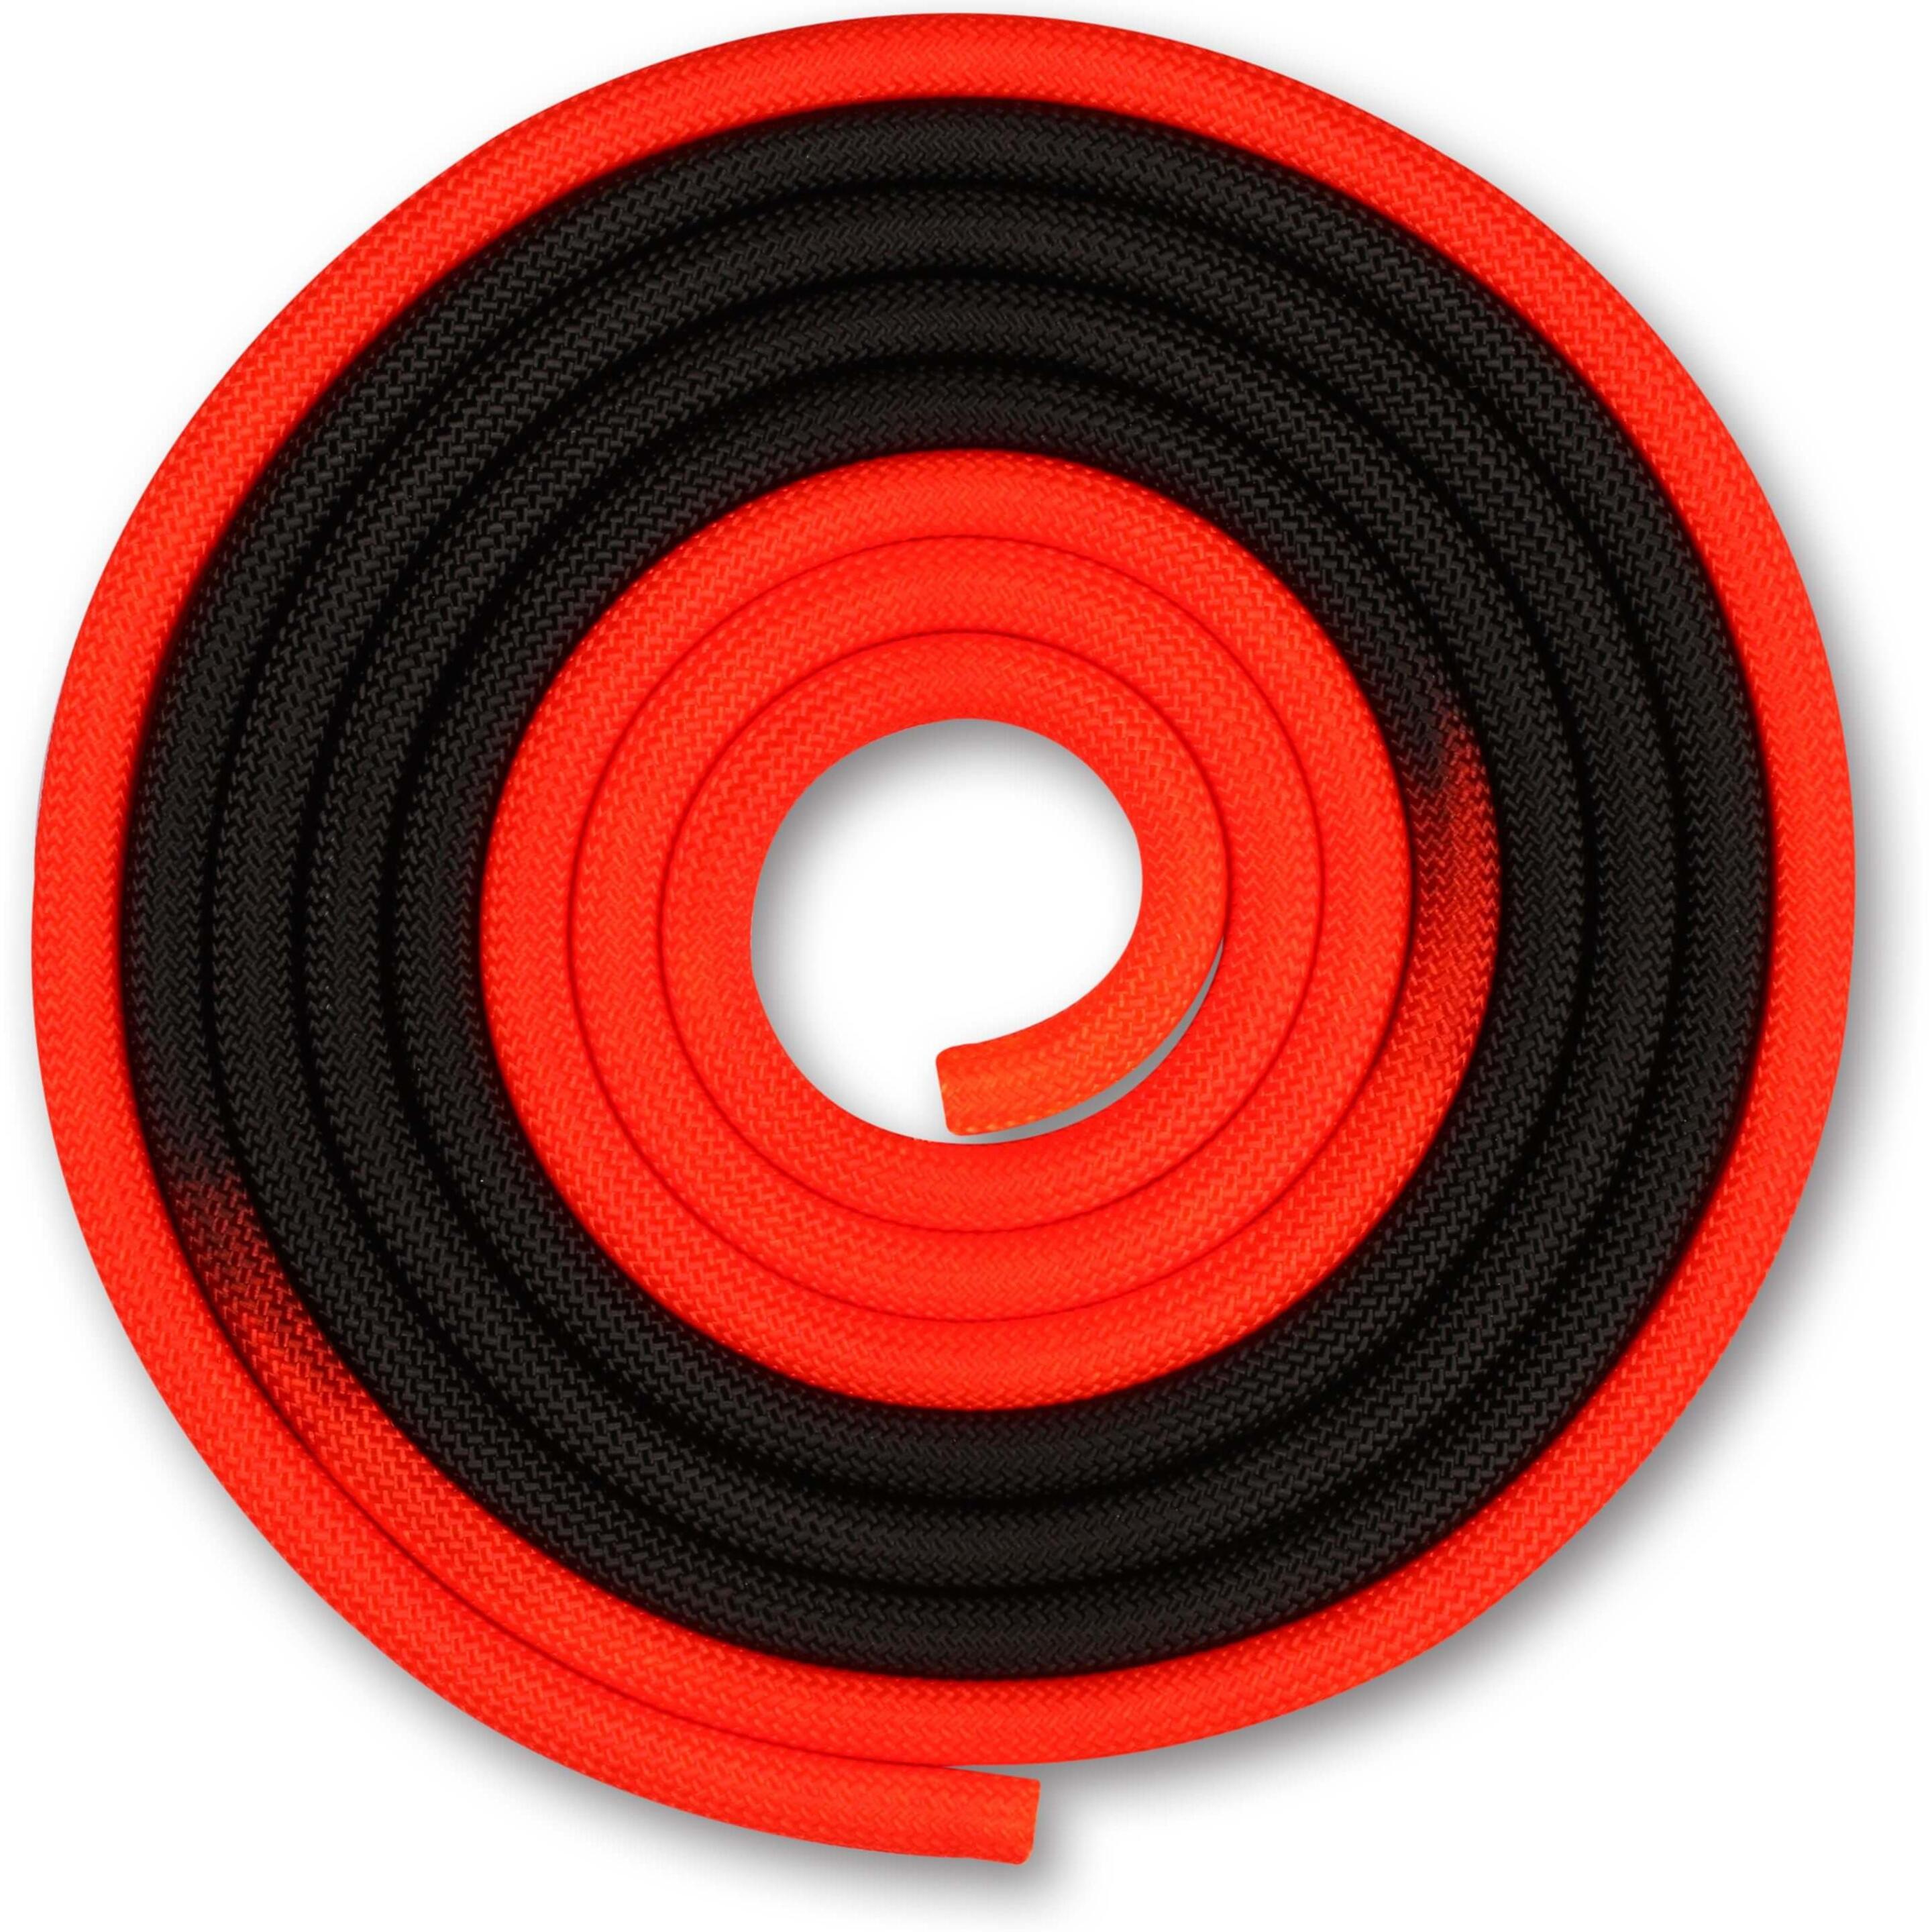 Cuerda Para Gimnasia Rítmica Ponderada 165g Indigo Bicolor 3 M - Rojo/Negro  MKP